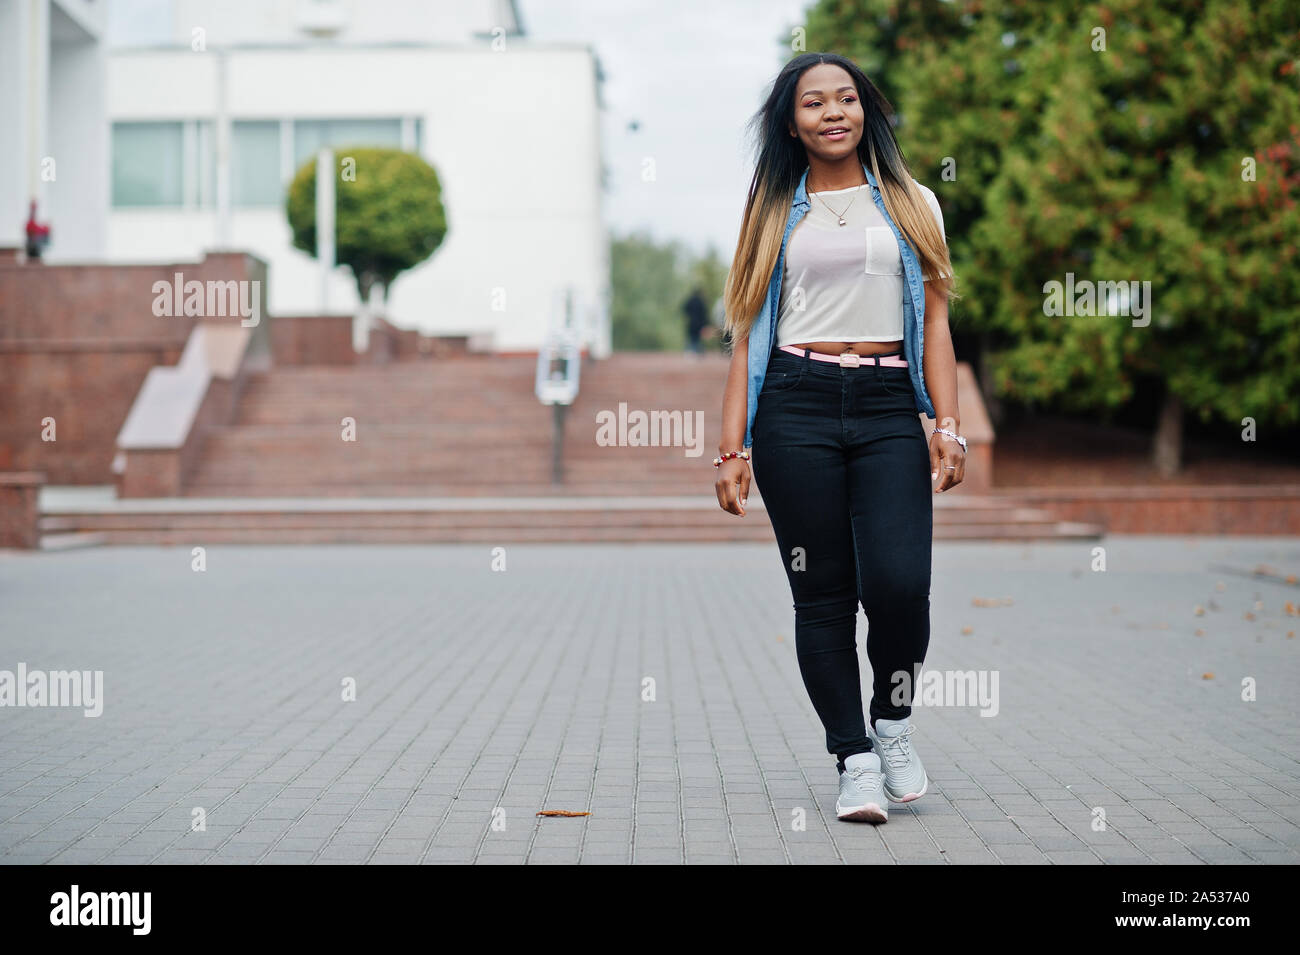 Full Length Portrait Brunette Girl Wearing Black Single Jeans Standing  Stock Photo by ©faestock 210571522